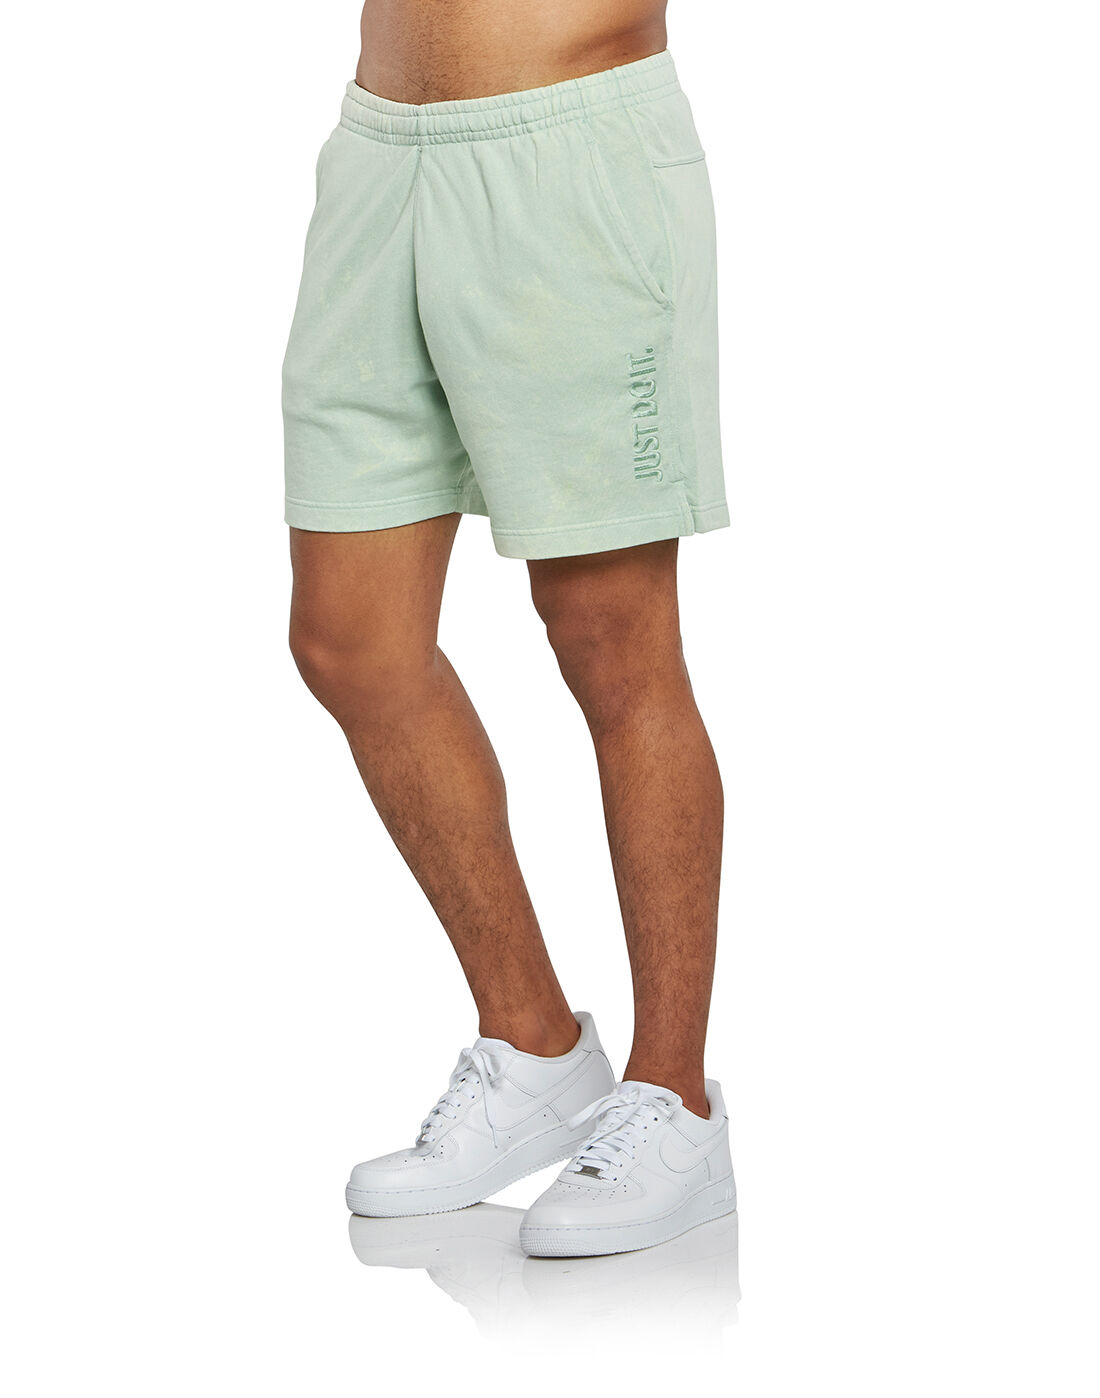 Nike Mens JDI Washed Shorts - Green 